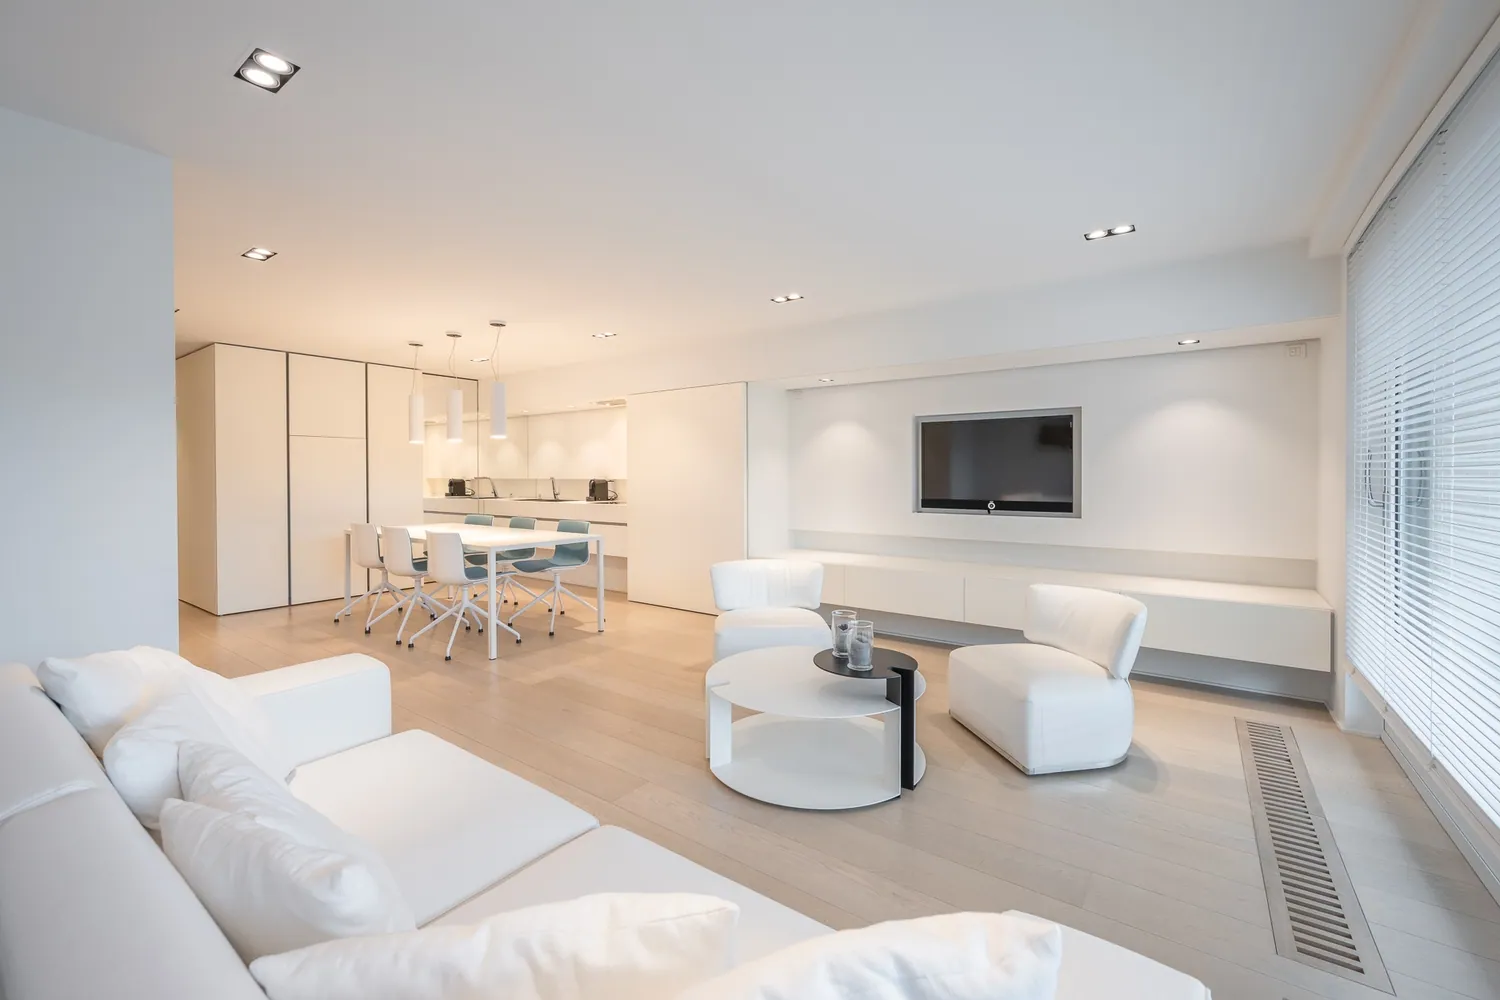 Appartement récent avec 2 chambres à coucher et terrasse sud situé sur l'avenue du zoute à Knokke. 